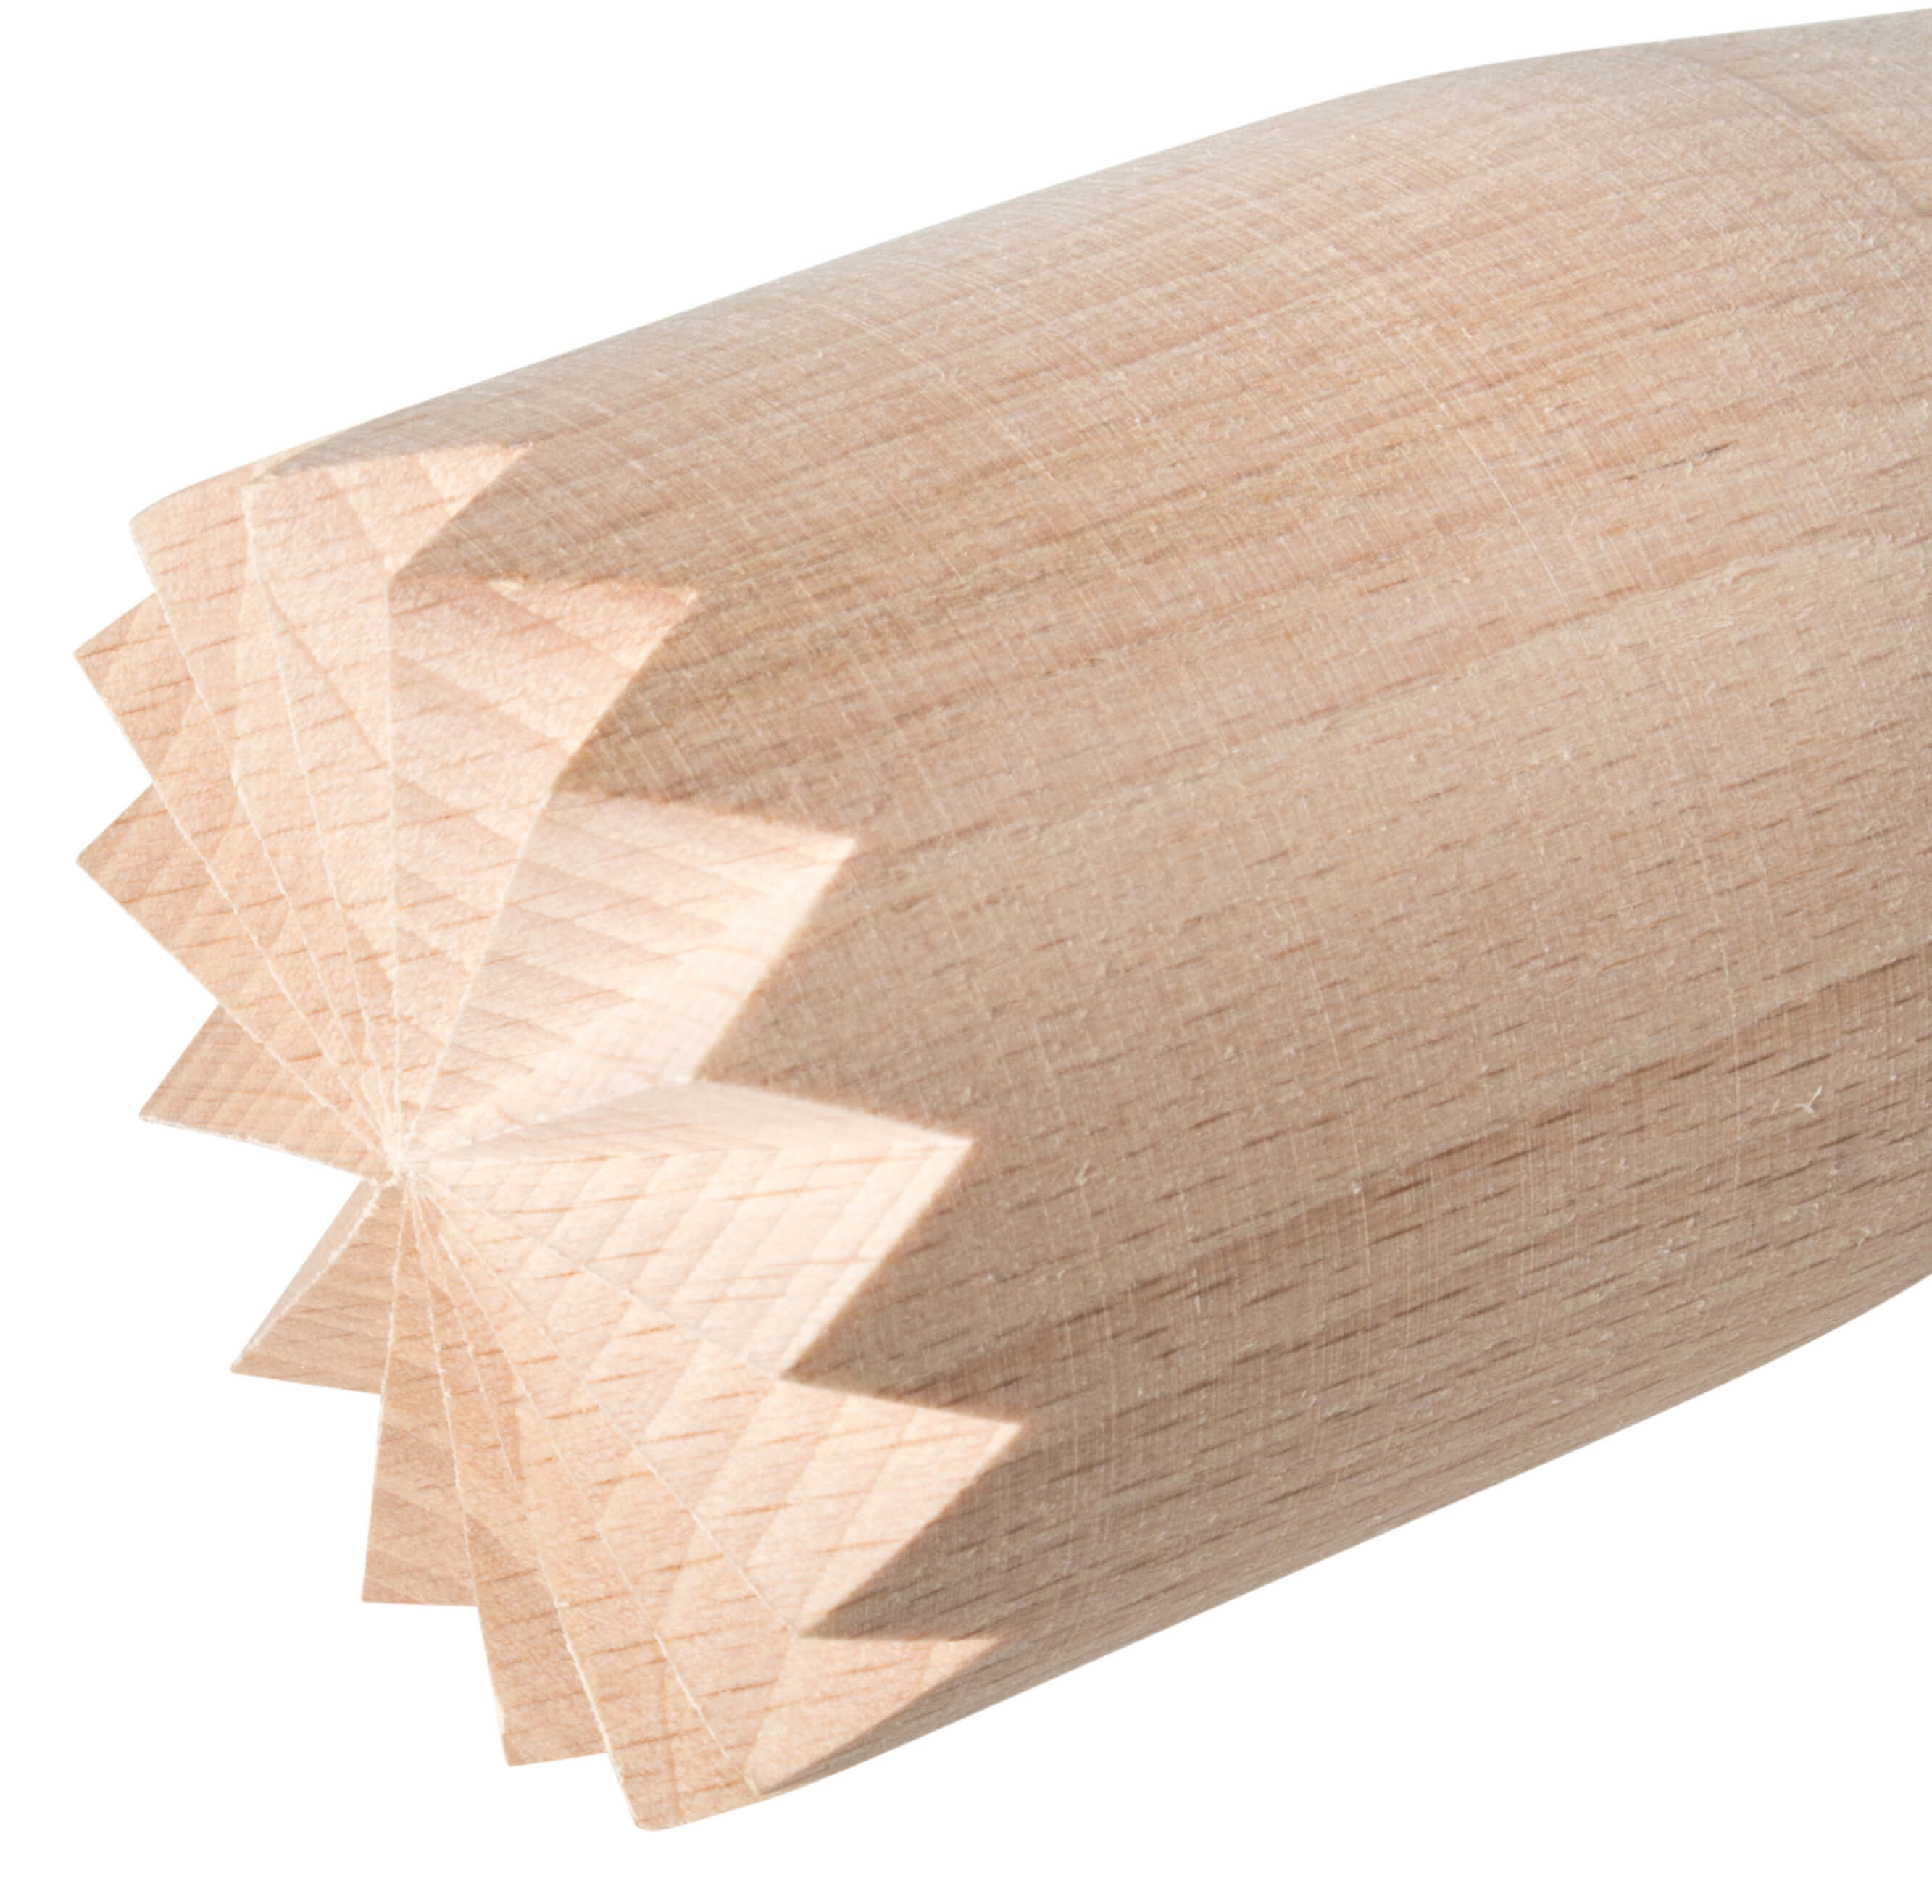 Barstößel XL, sternenförmiges Ende - Holz (38cm)